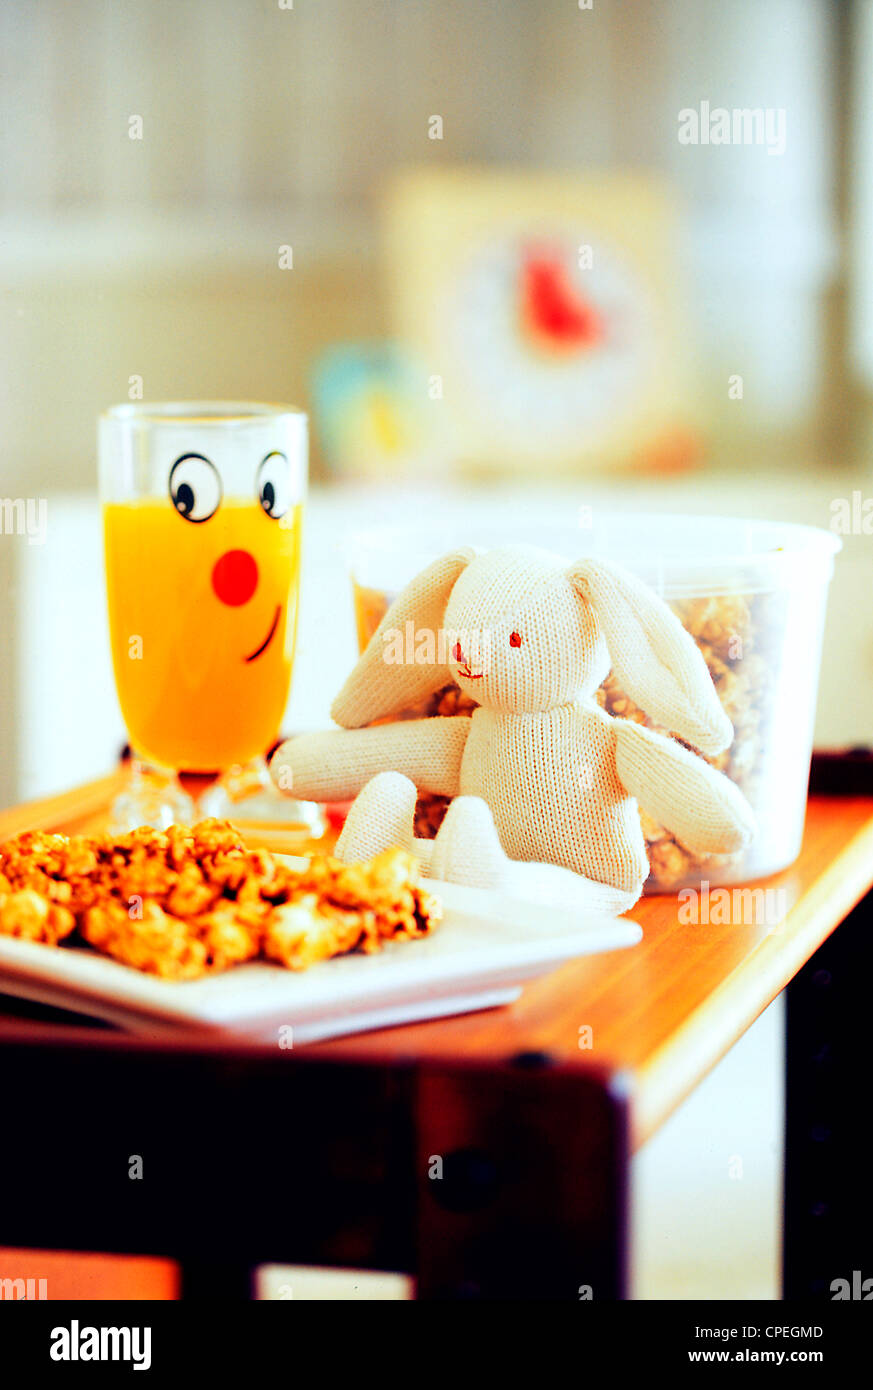 La comida, la bebida y el juguete en la mesa Foto de stock